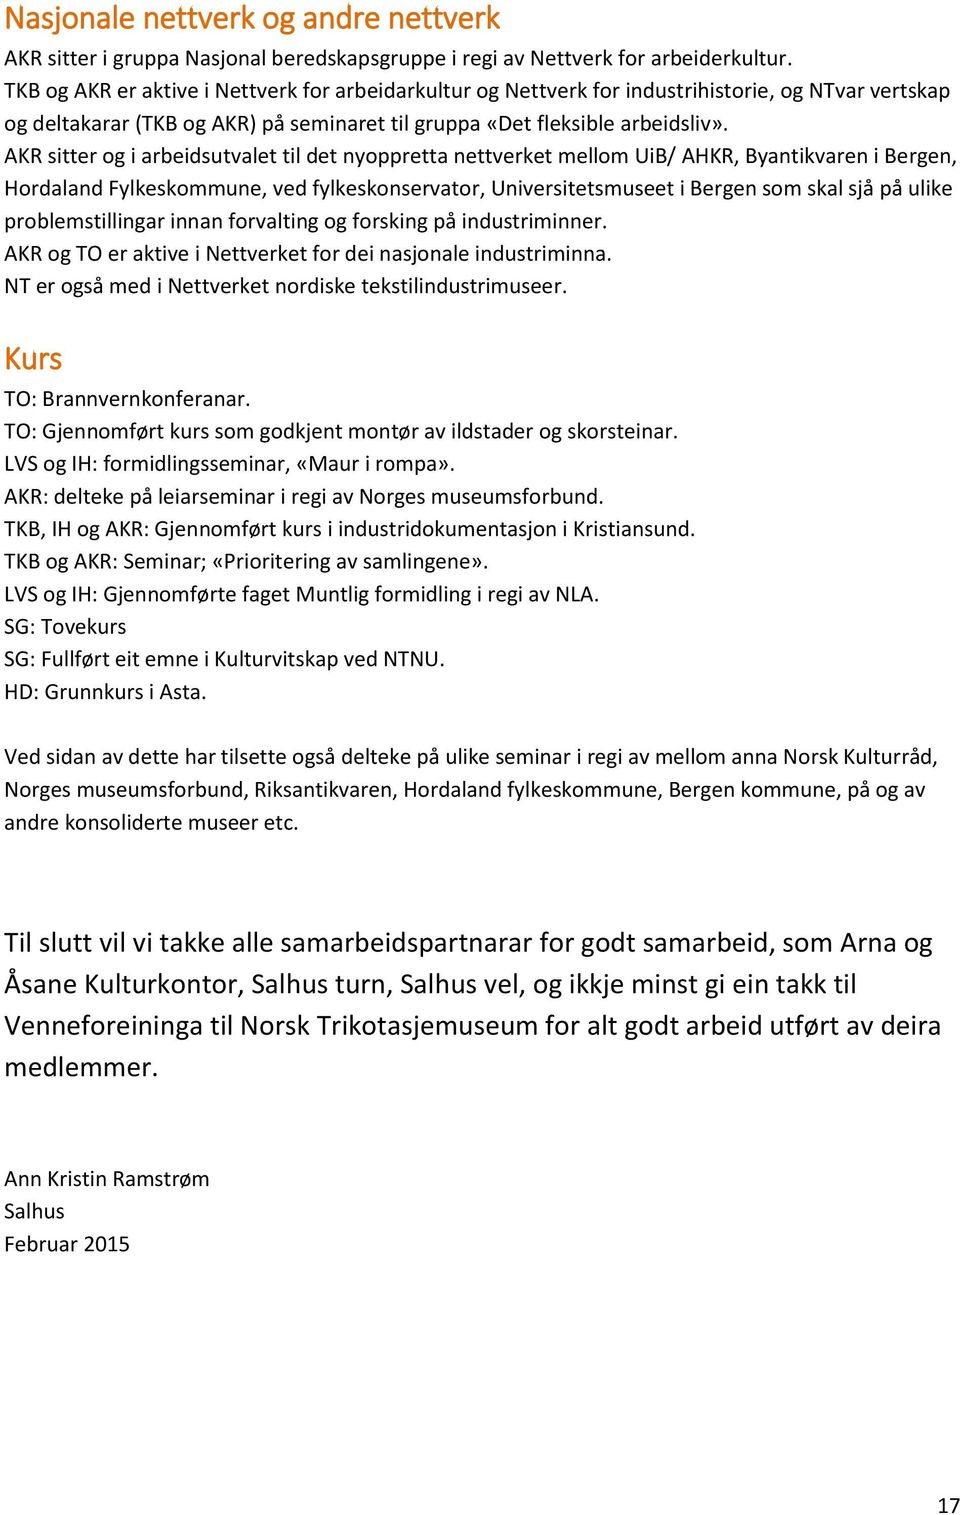 AKR sitter og i arbeidsutvalet til det nyoppretta nettverket mellom UiB/ AHKR, Byantikvaren i Bergen, Hordaland Fylkeskommune, ved fylkeskonservator, Universitetsmuseet i Bergen som skal sjå på ulike